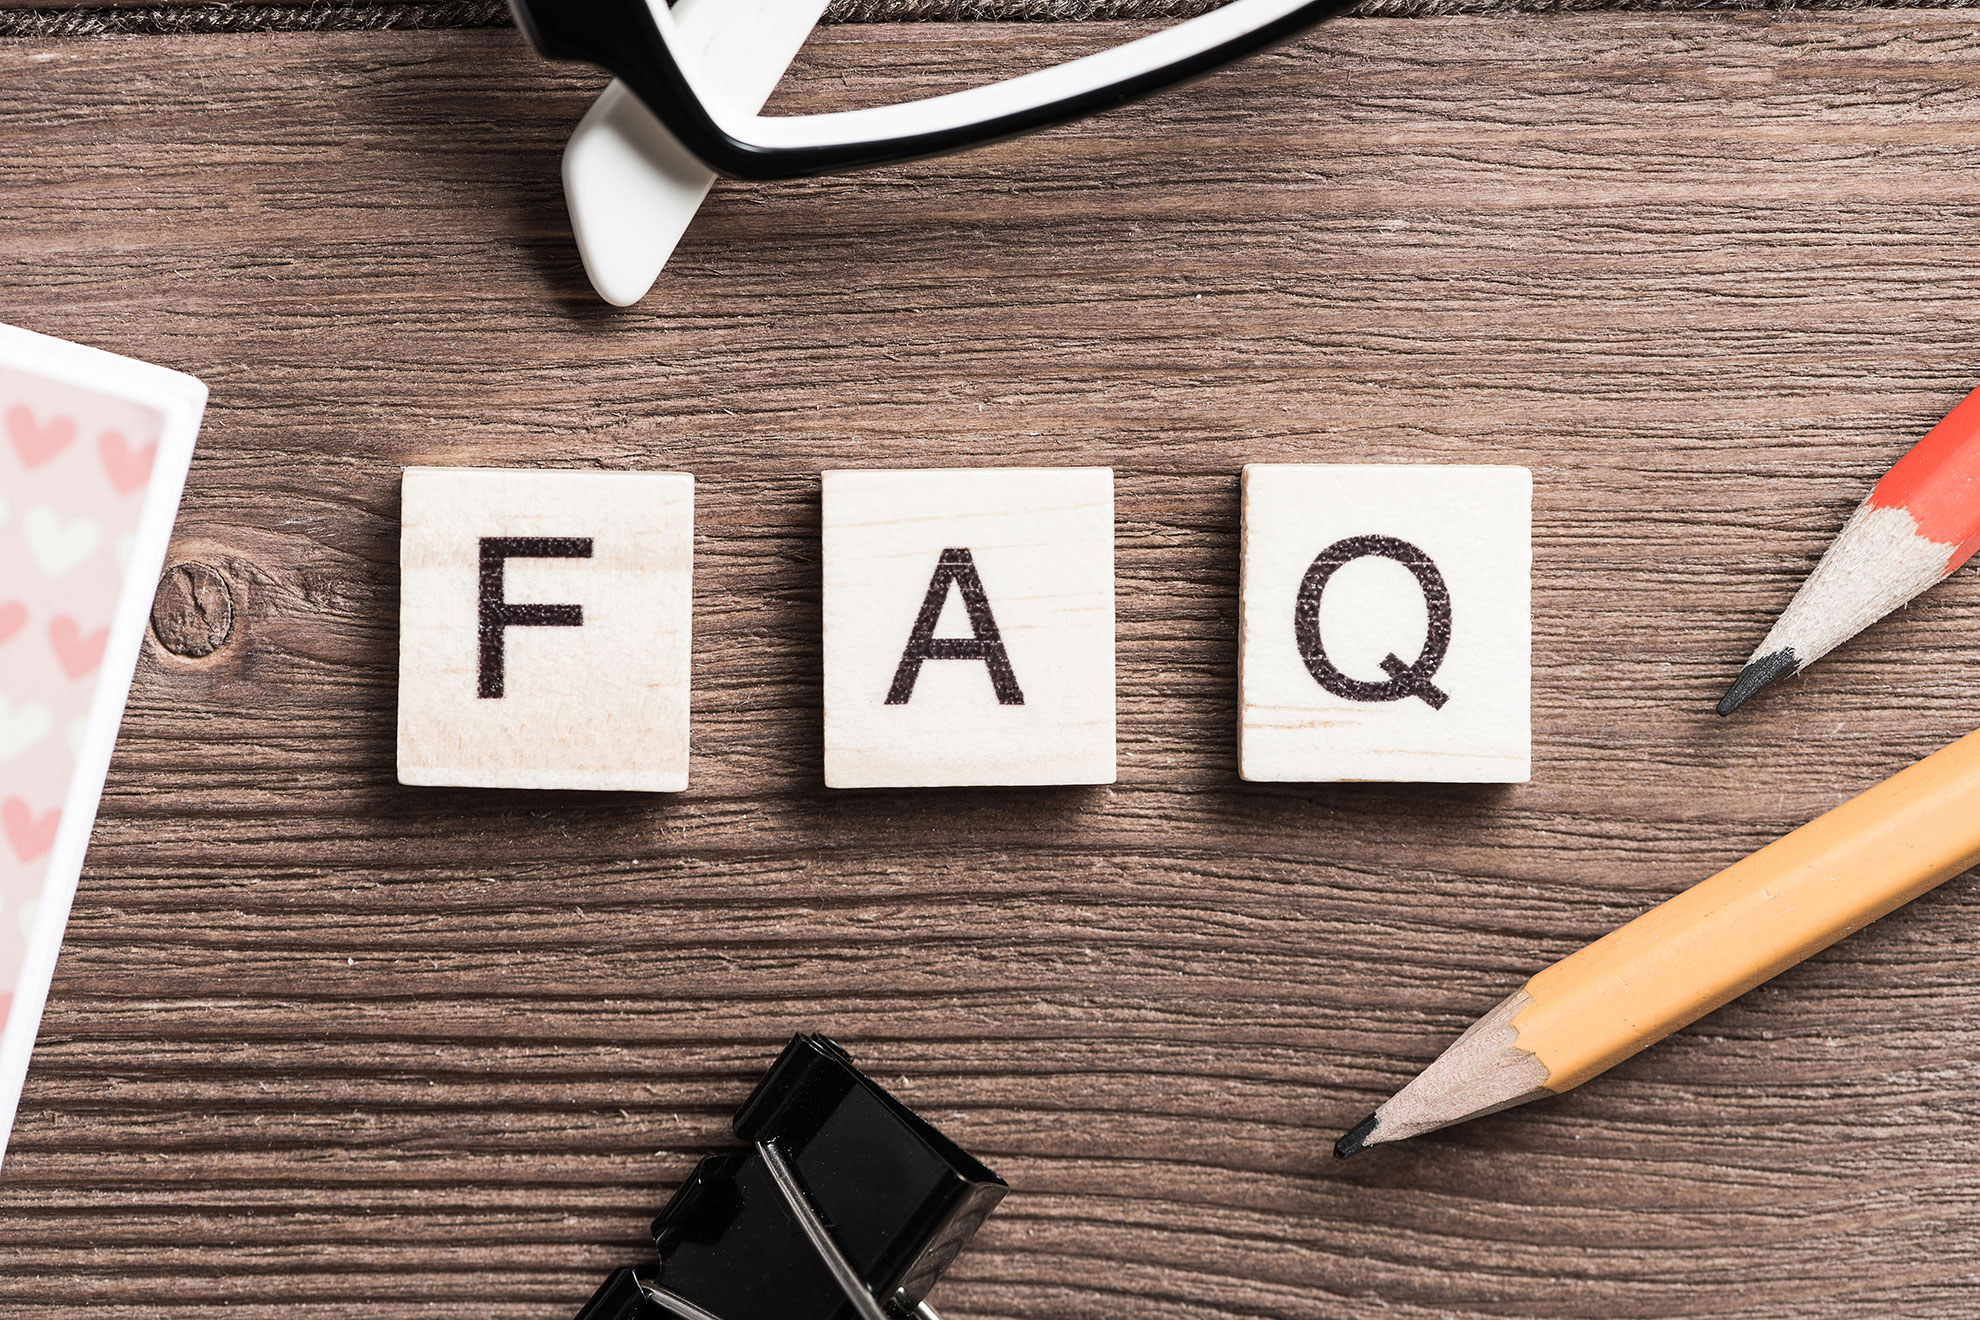 FAQ, ilustracja do artykułu wyjaśniającego znaczenie akronimu FAQ